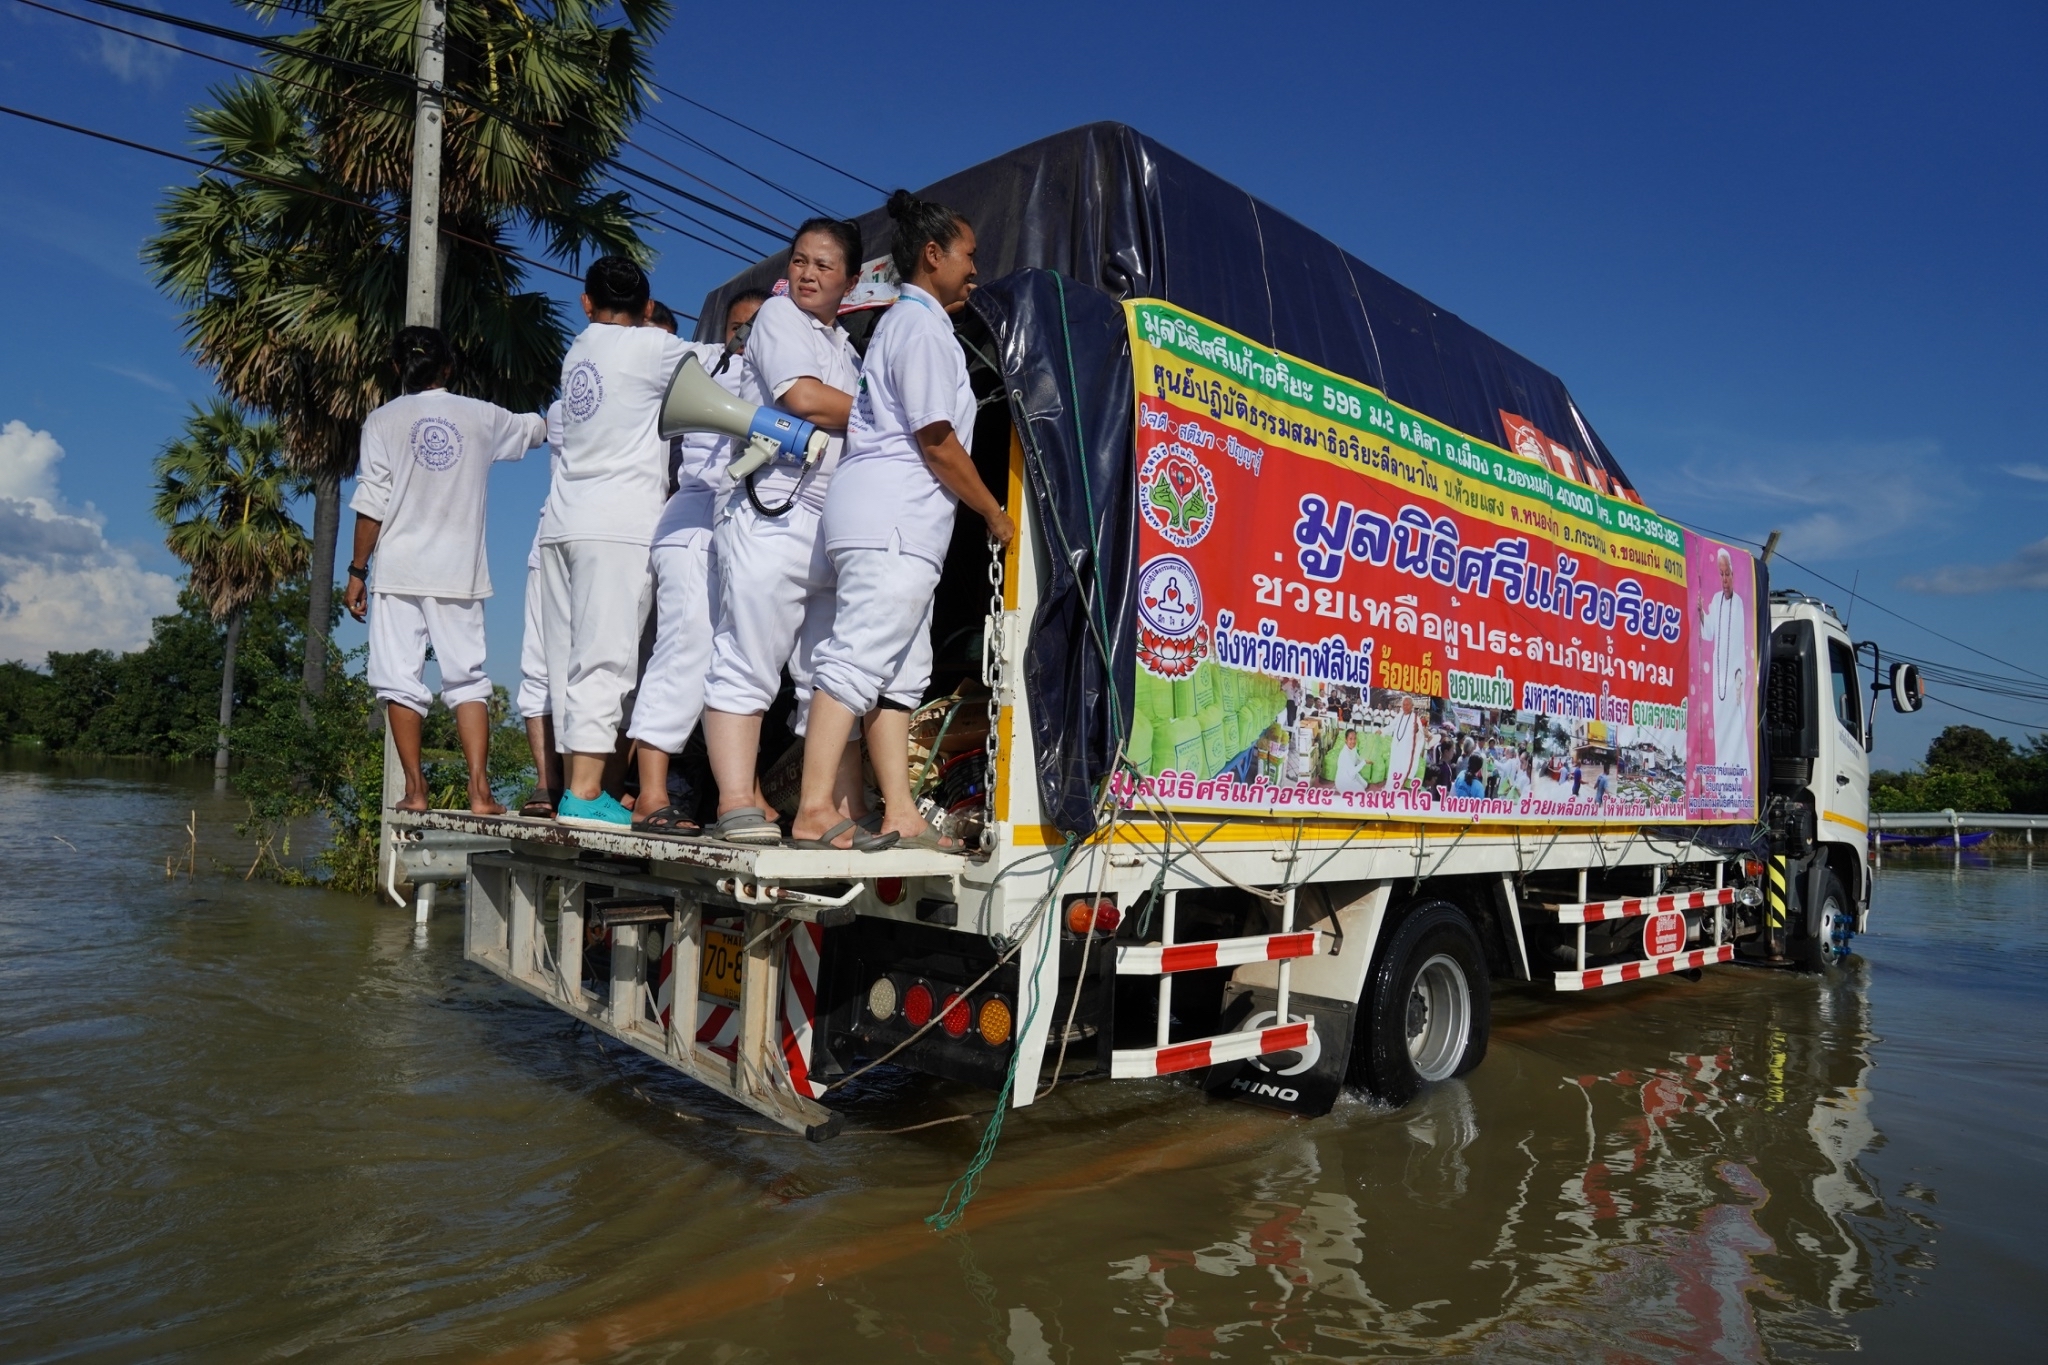 โครงการช่วยเหลือผู้ประสบภัยน้ำท่วมจังหวัดอุบลราชธานี   วันที่ 16  กันยายน  2562 ณ  พื้นที่บ้านท่ากกเสียว อำเภอวาริน ชุมชนวัดบูรพา 2 อำเภอเมือง จังหวัดอุบลราชธานี